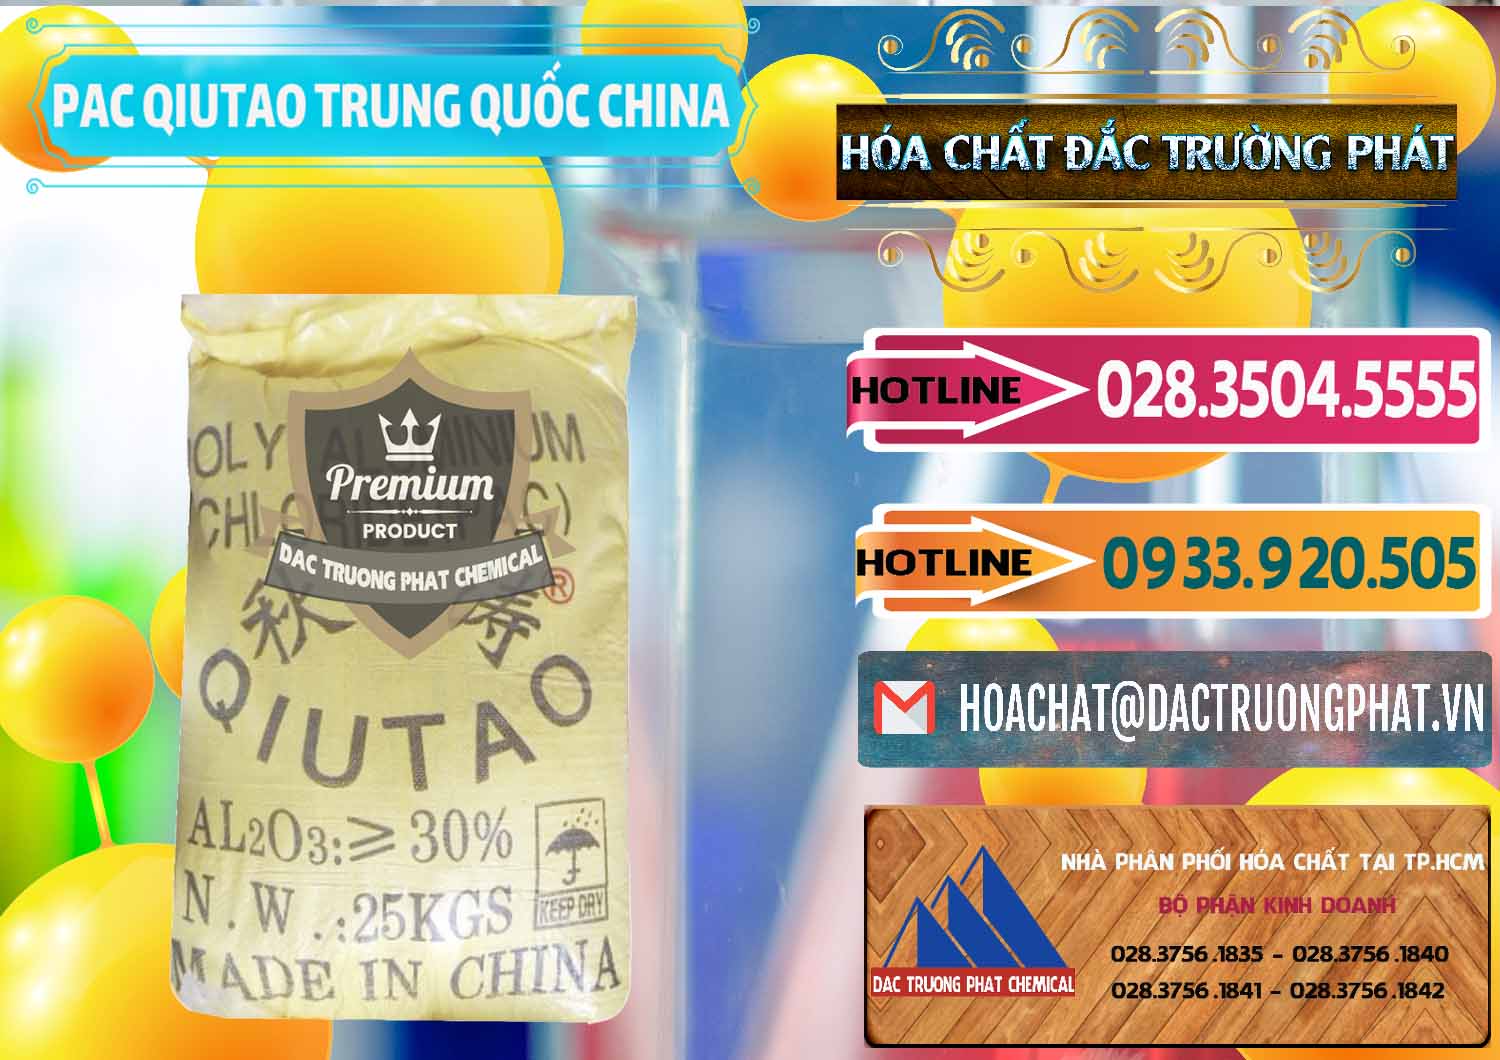 Kinh doanh & bán PAC - Polyaluminium Chloride Qiutao Trung Quốc China - 0267 - Nơi chuyên cung cấp - bán hóa chất tại TP.HCM - dactruongphat.vn